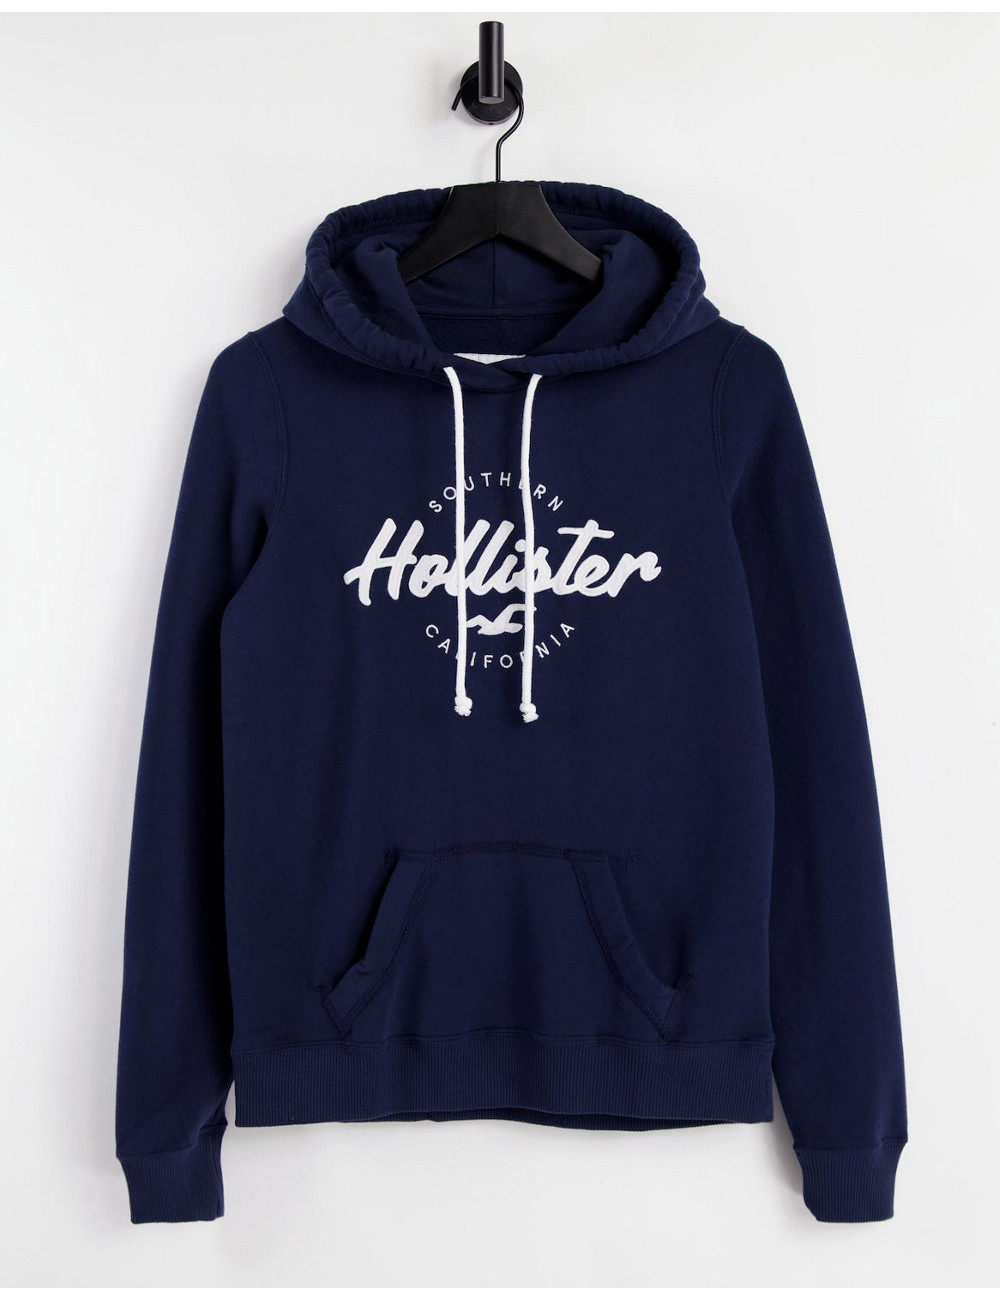 Hollister logo hoodie in navy